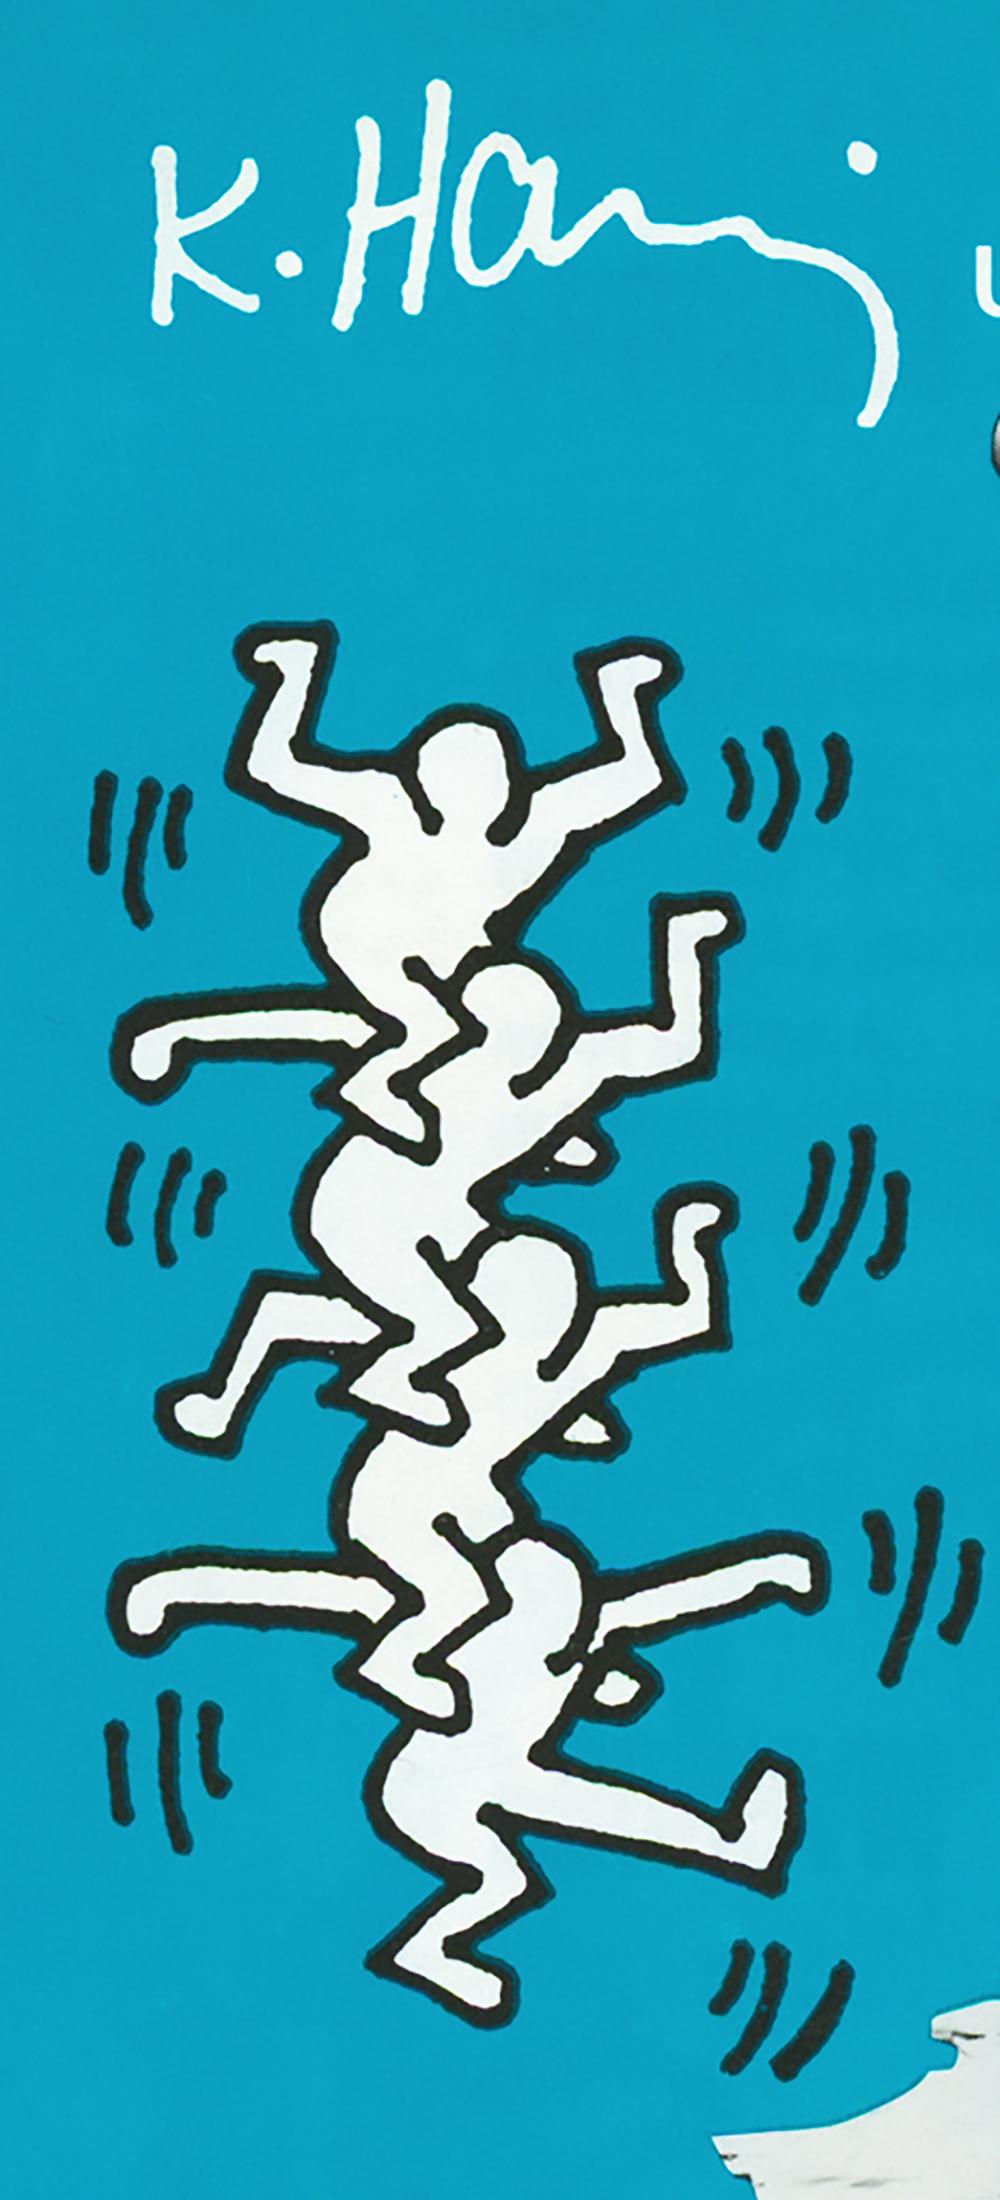 Keith Haring Yoko Ono 1987:
Seltene illustrierte Ankündigung von Keith Haring aus den 1980er Jahren für "Dance Plus" - eine einwöchige Performance, veranstaltet von Keith Haring, Tseng Kwon Chi, Yoko Ono, Judith Jamison und Jennifer Muller - mit der